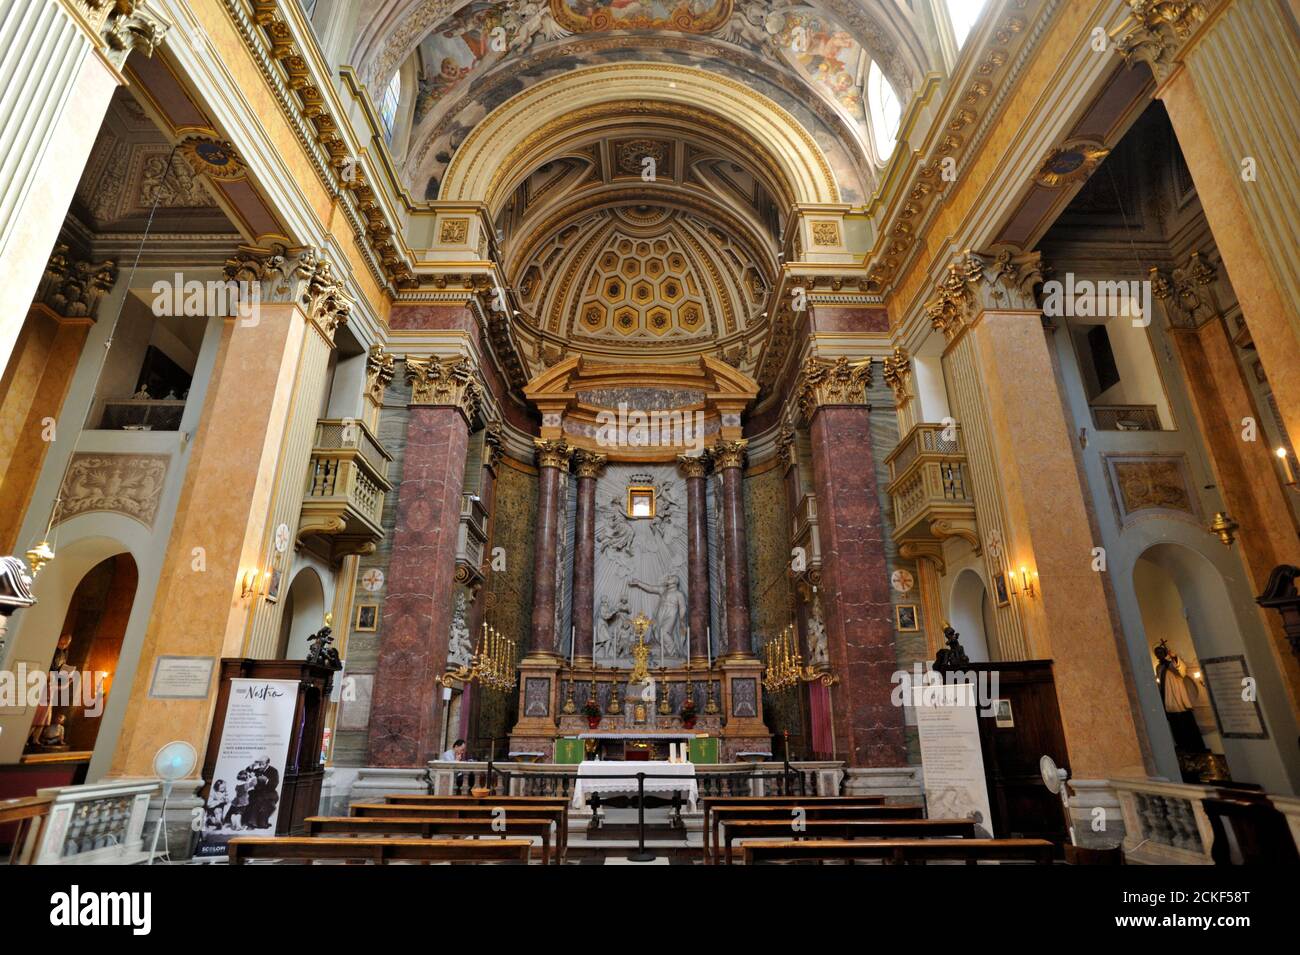 Italy, Rome, church of San Pantaleo interior Stock Photo